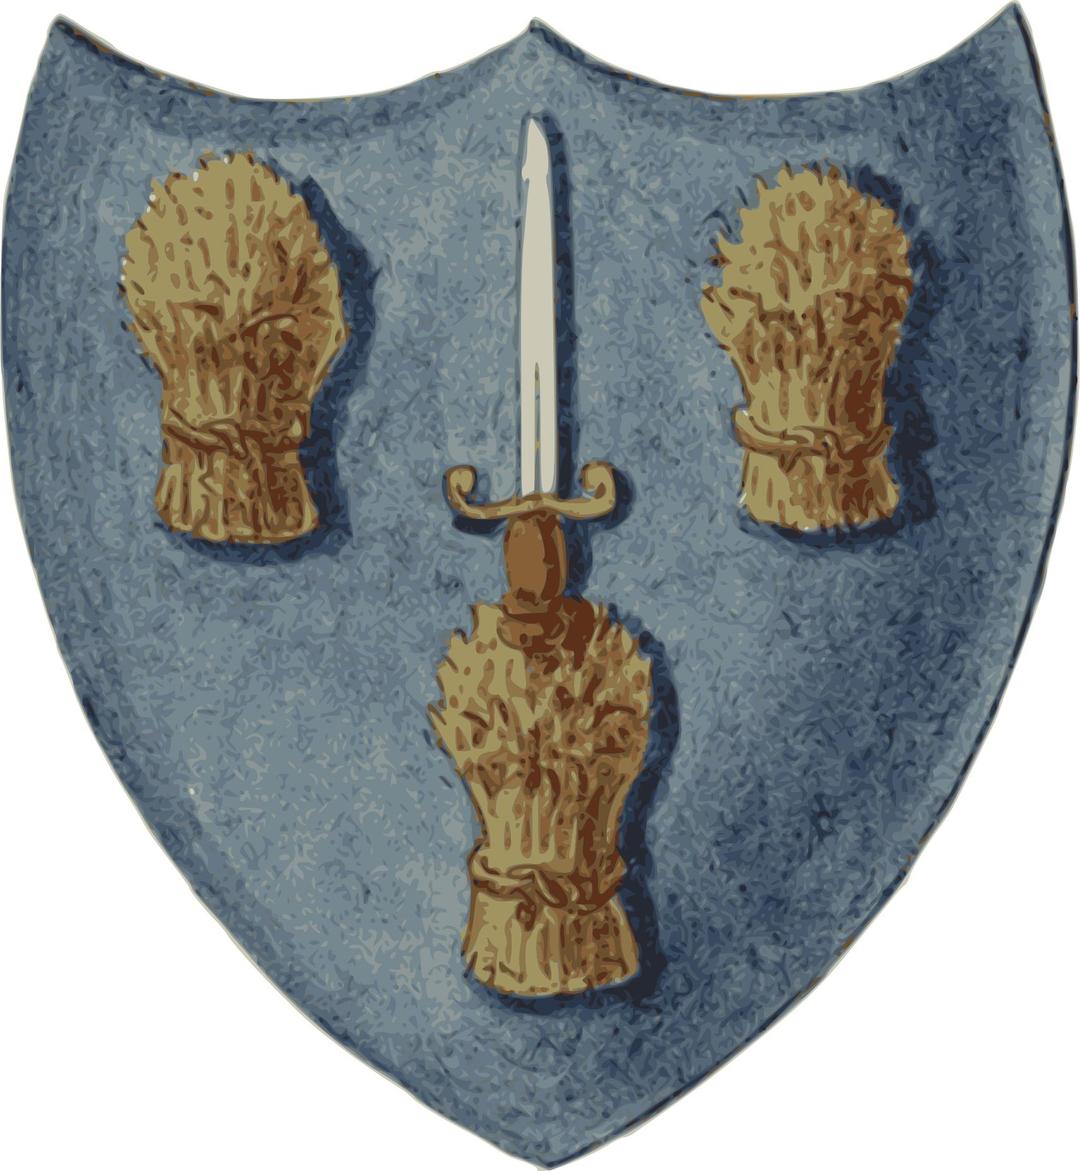 Arfbais Caer | Arms of Chester png transparent